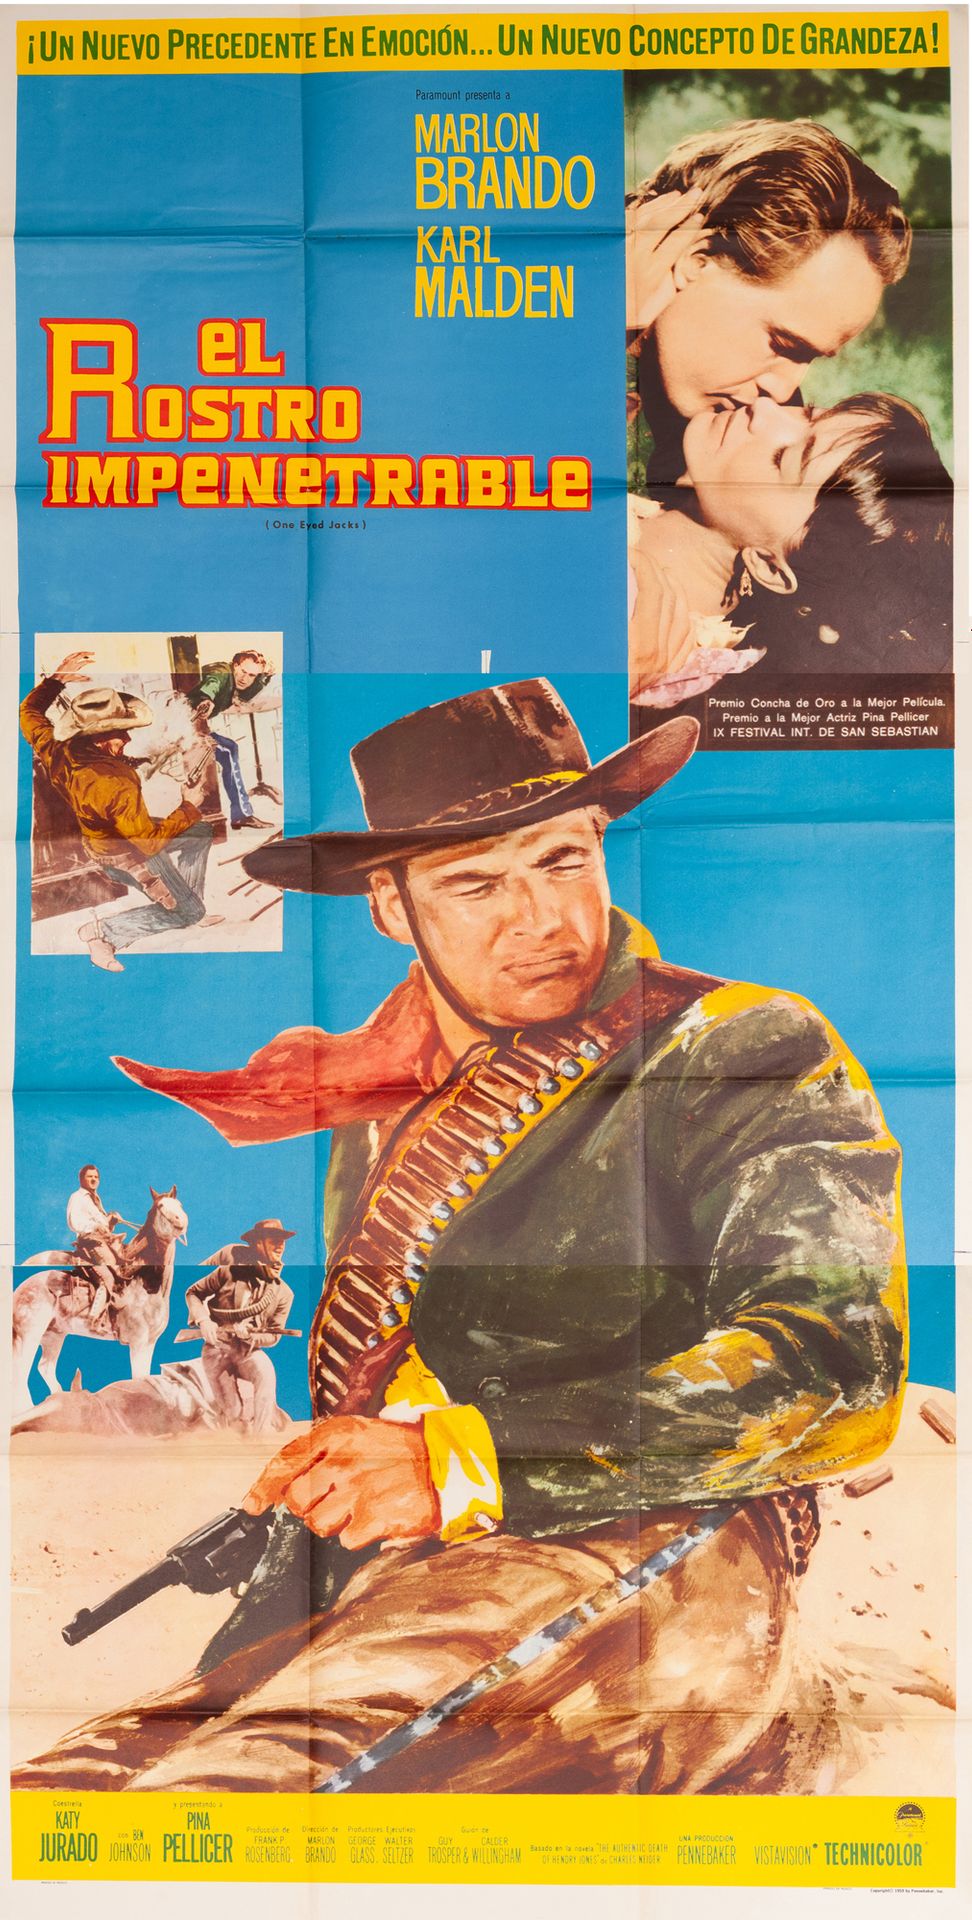 Null EL ROSTRO INPENETRABLA /
JACKS DE UN SOLO OJO Marlon Brando. 1961.
95 x 190&hellip;